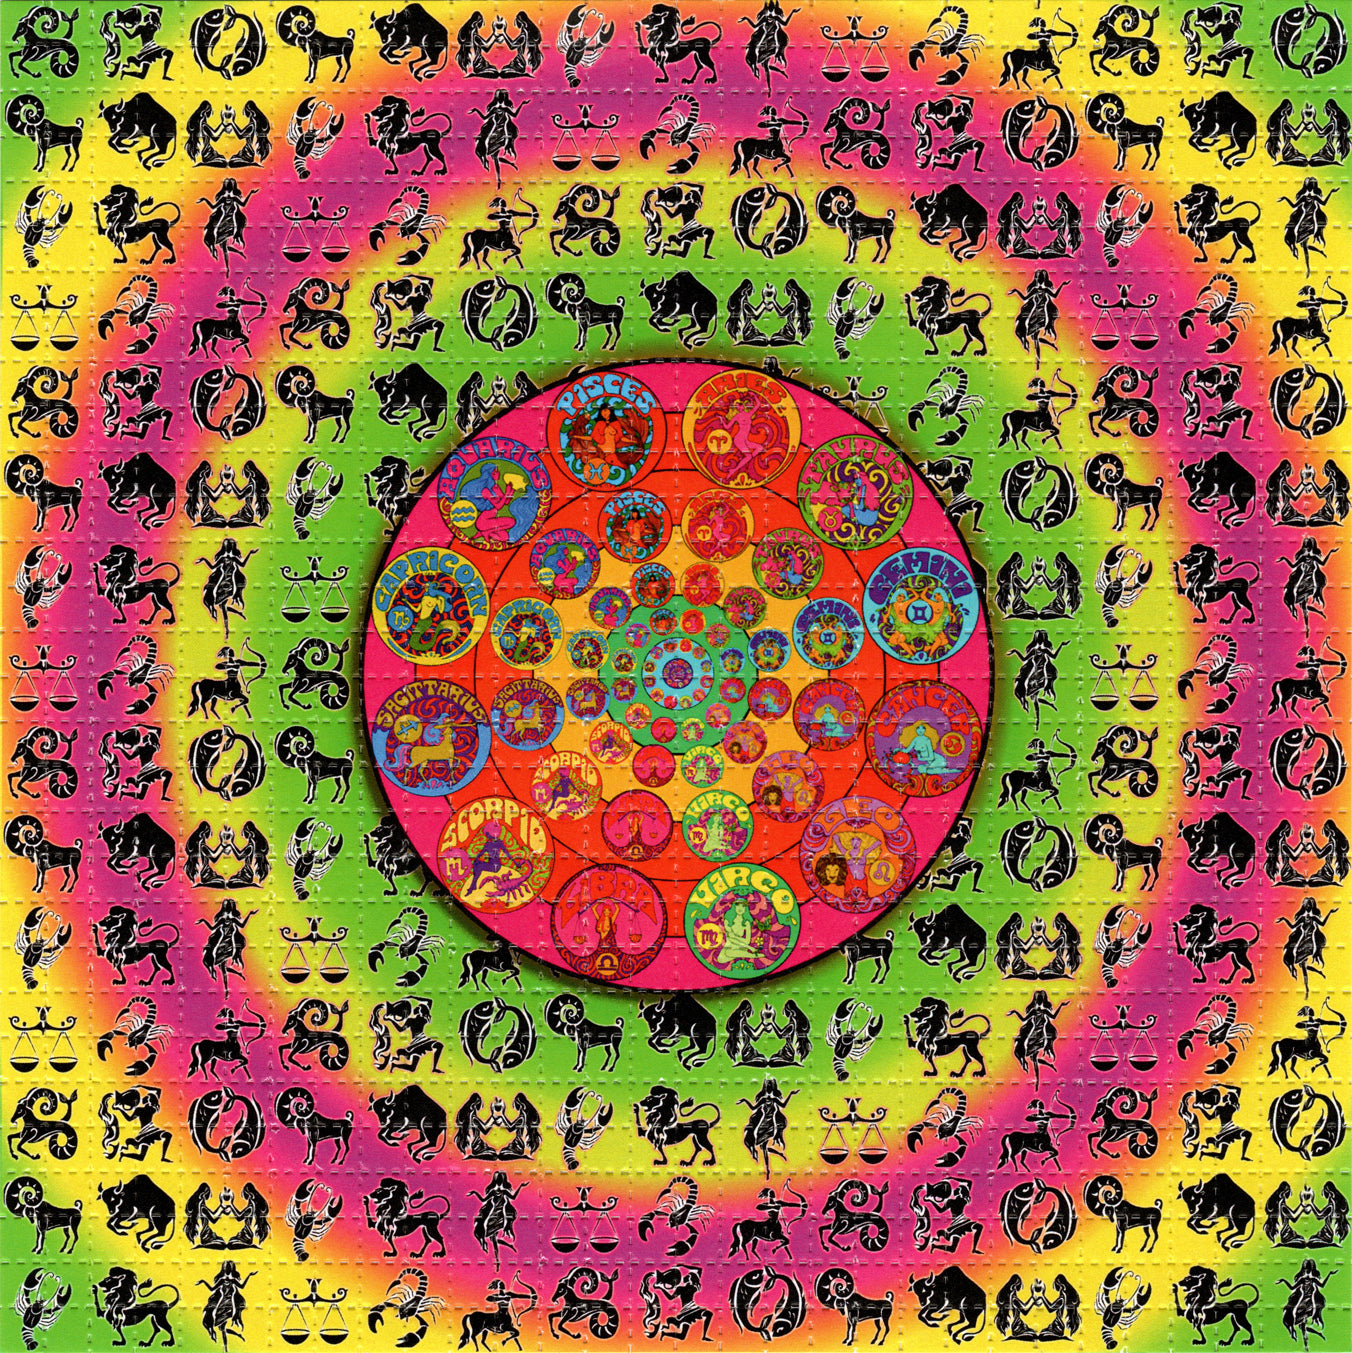 Zodiac LSD blotter art print